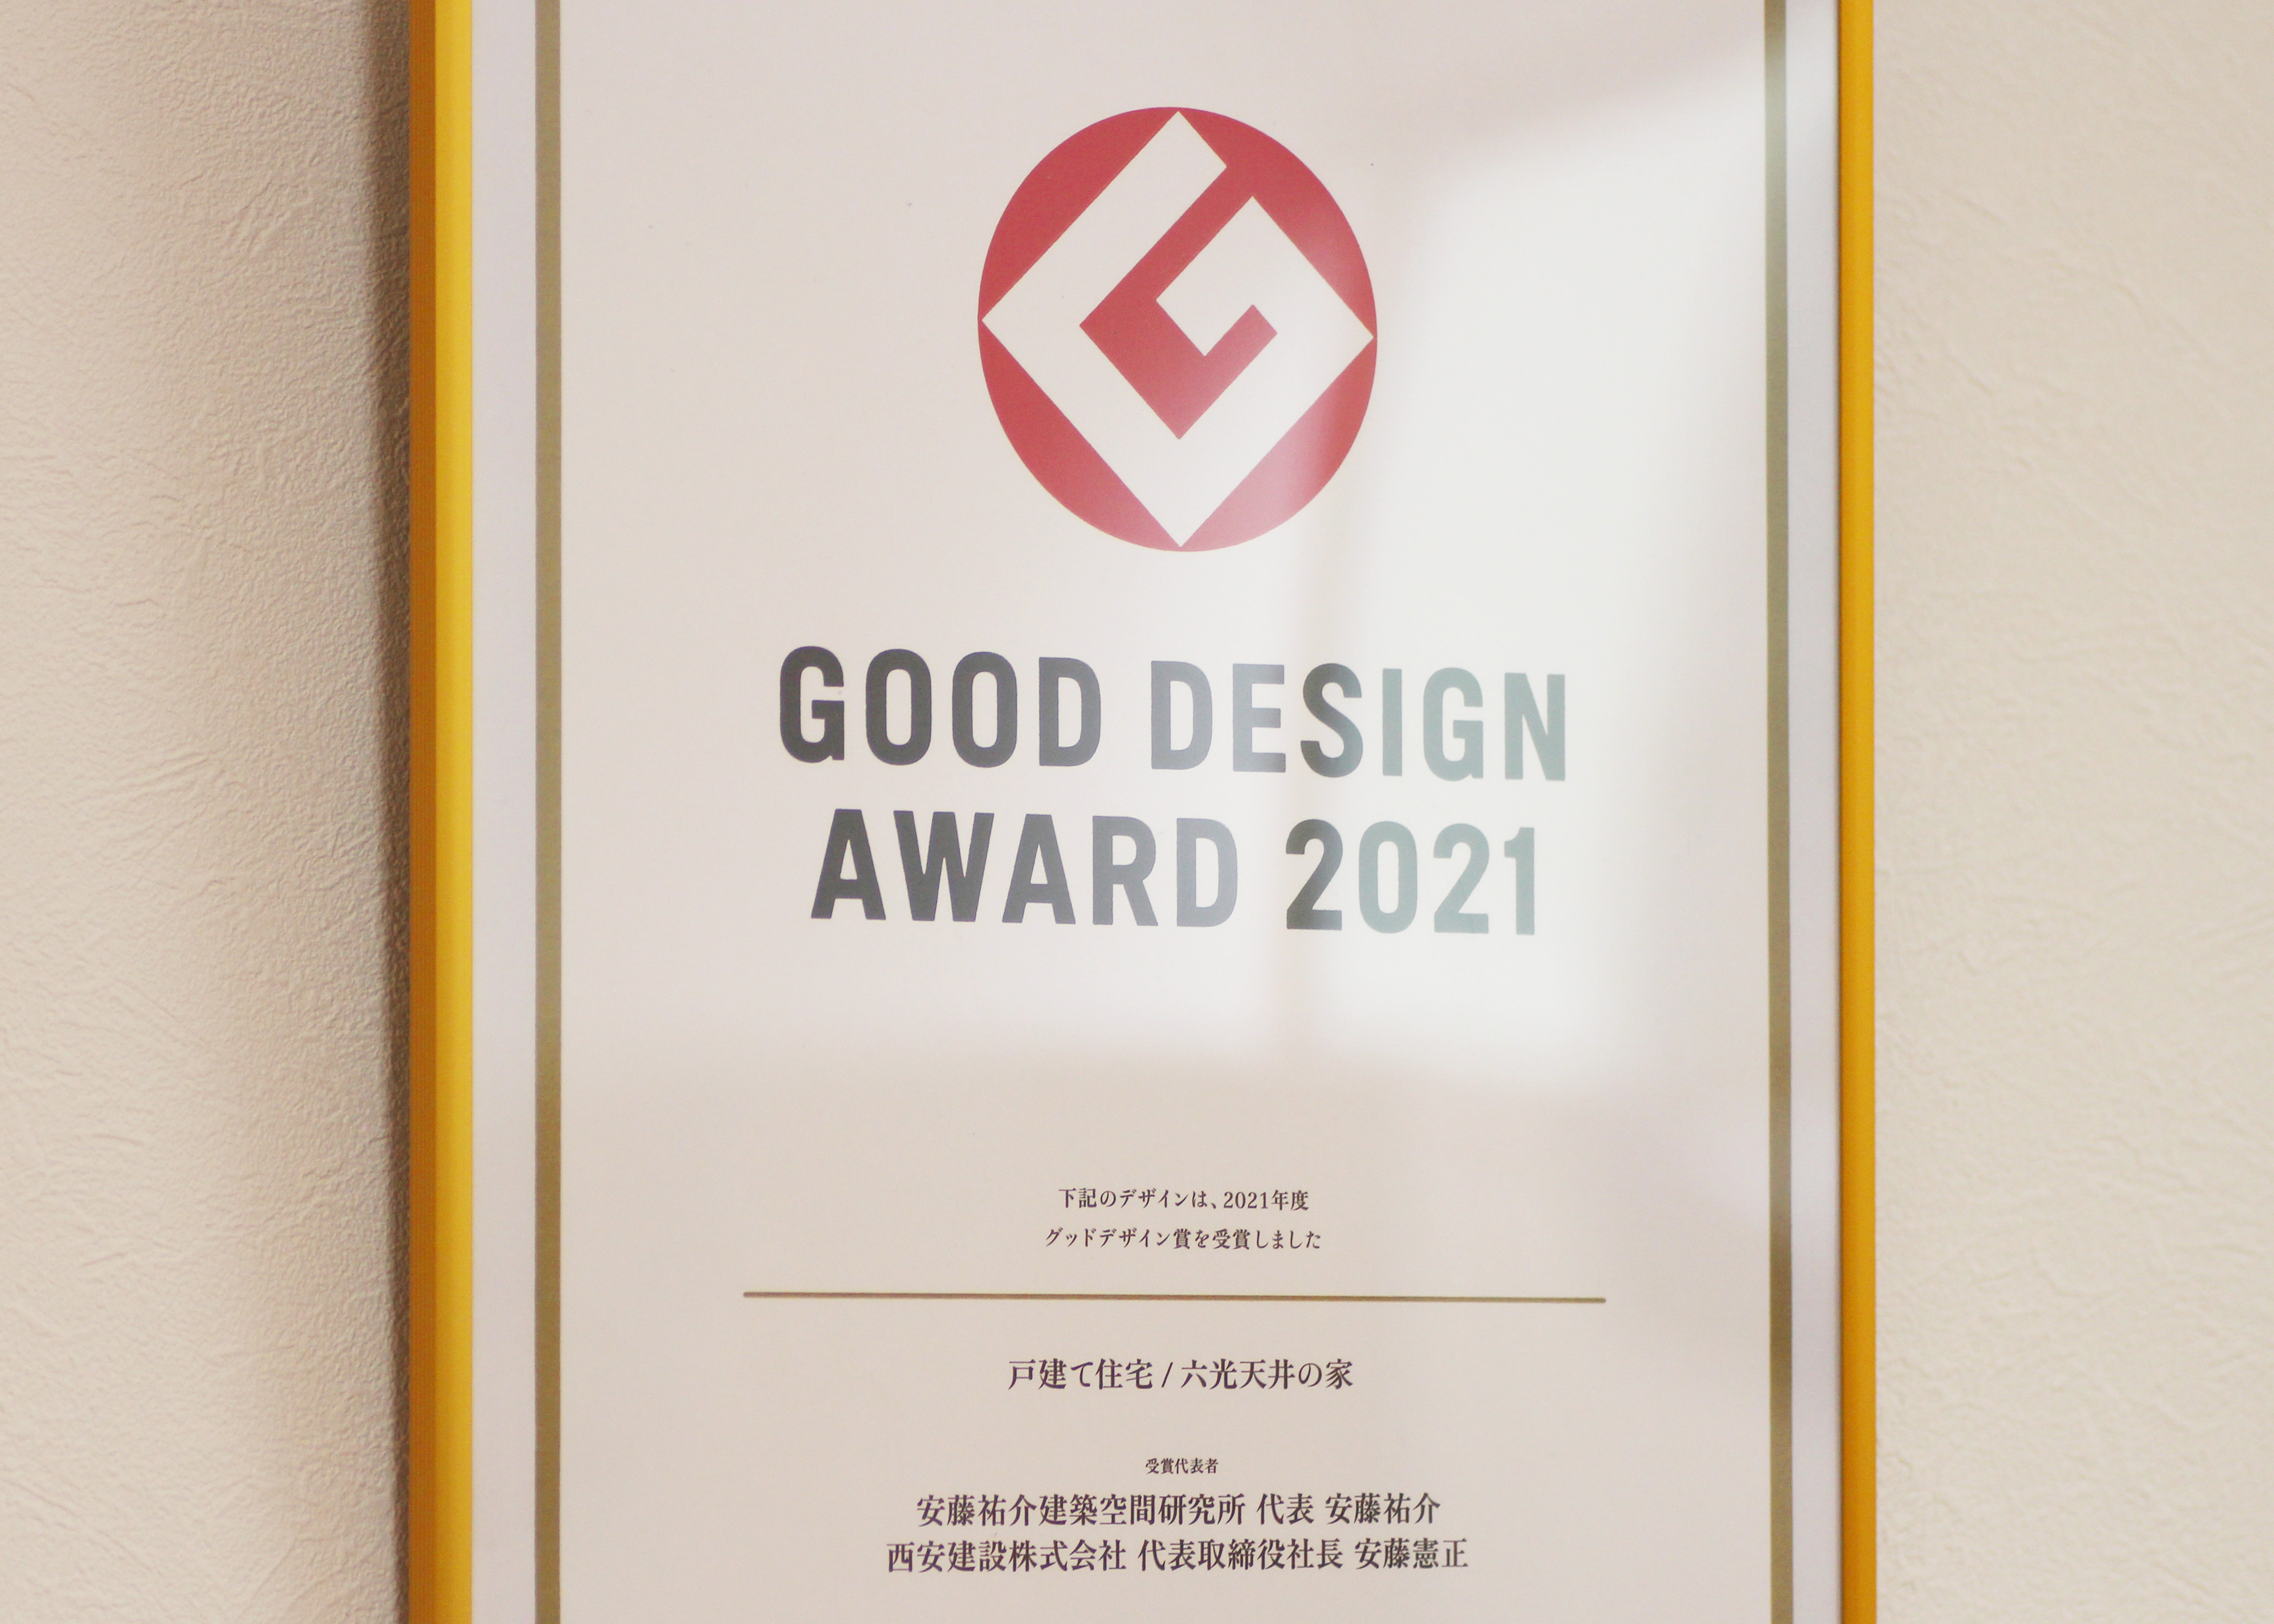 021年に受賞された、「グッドデザインアワード2021」グッドデザイン賞の表彰状。